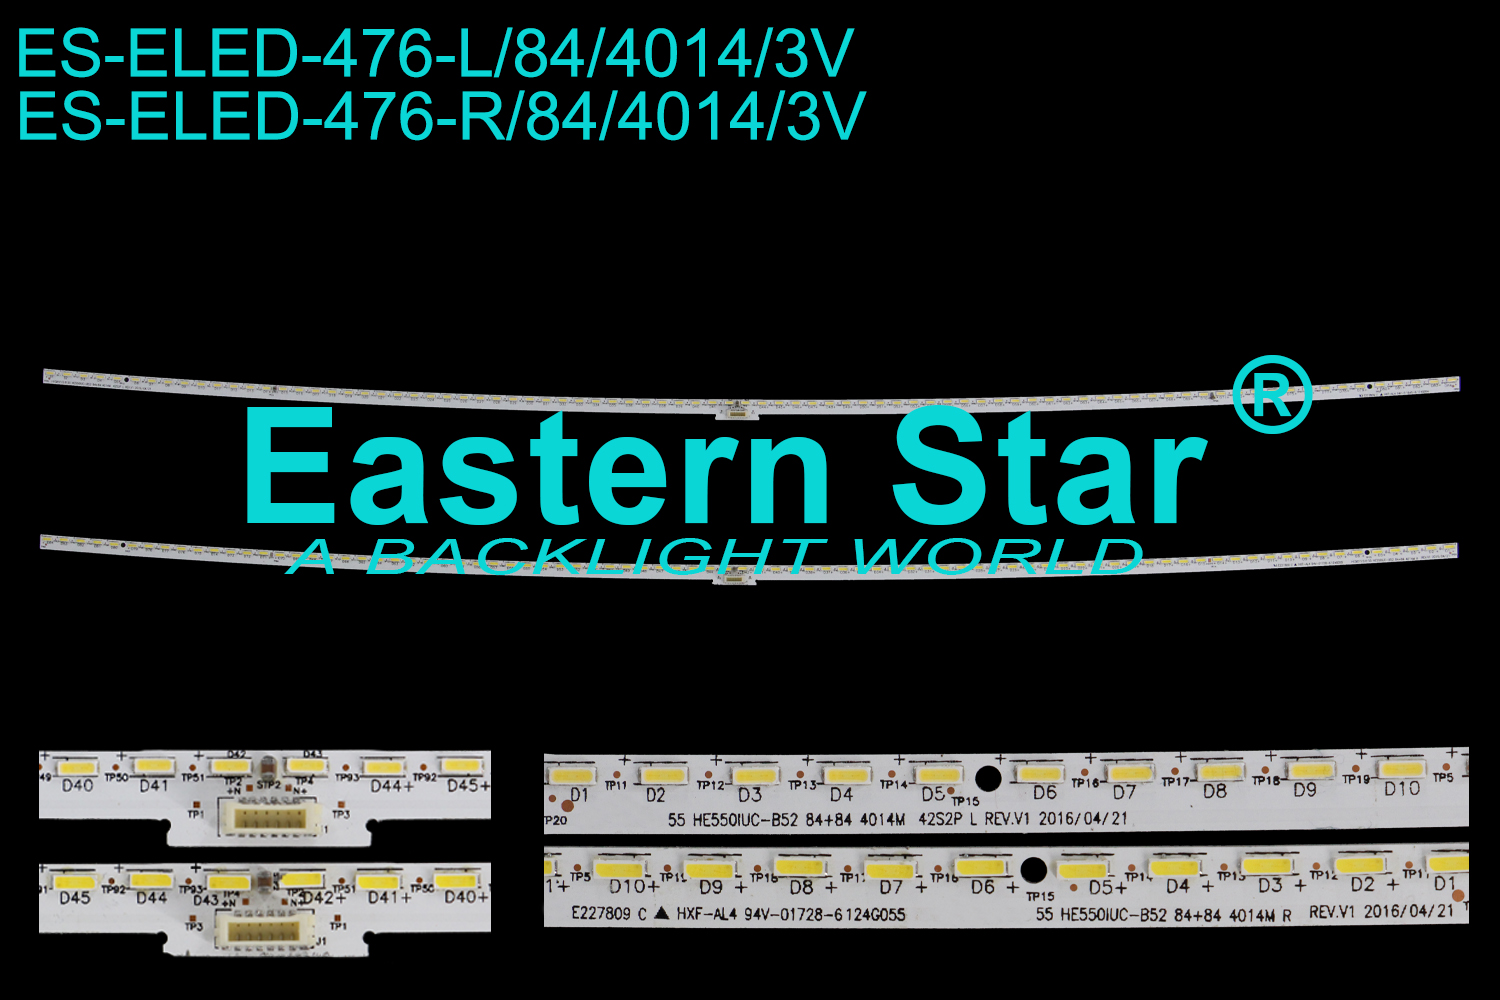 ES-ELED-476 ELED/EDGE TV backlight use for 55'' Hisense H55M6600,H55MEC5650  55 HE550IUC-B52 84+84 4014M R  / 55 HE550IUC-B52 84+84 4014M L  LED STRIPS(2）